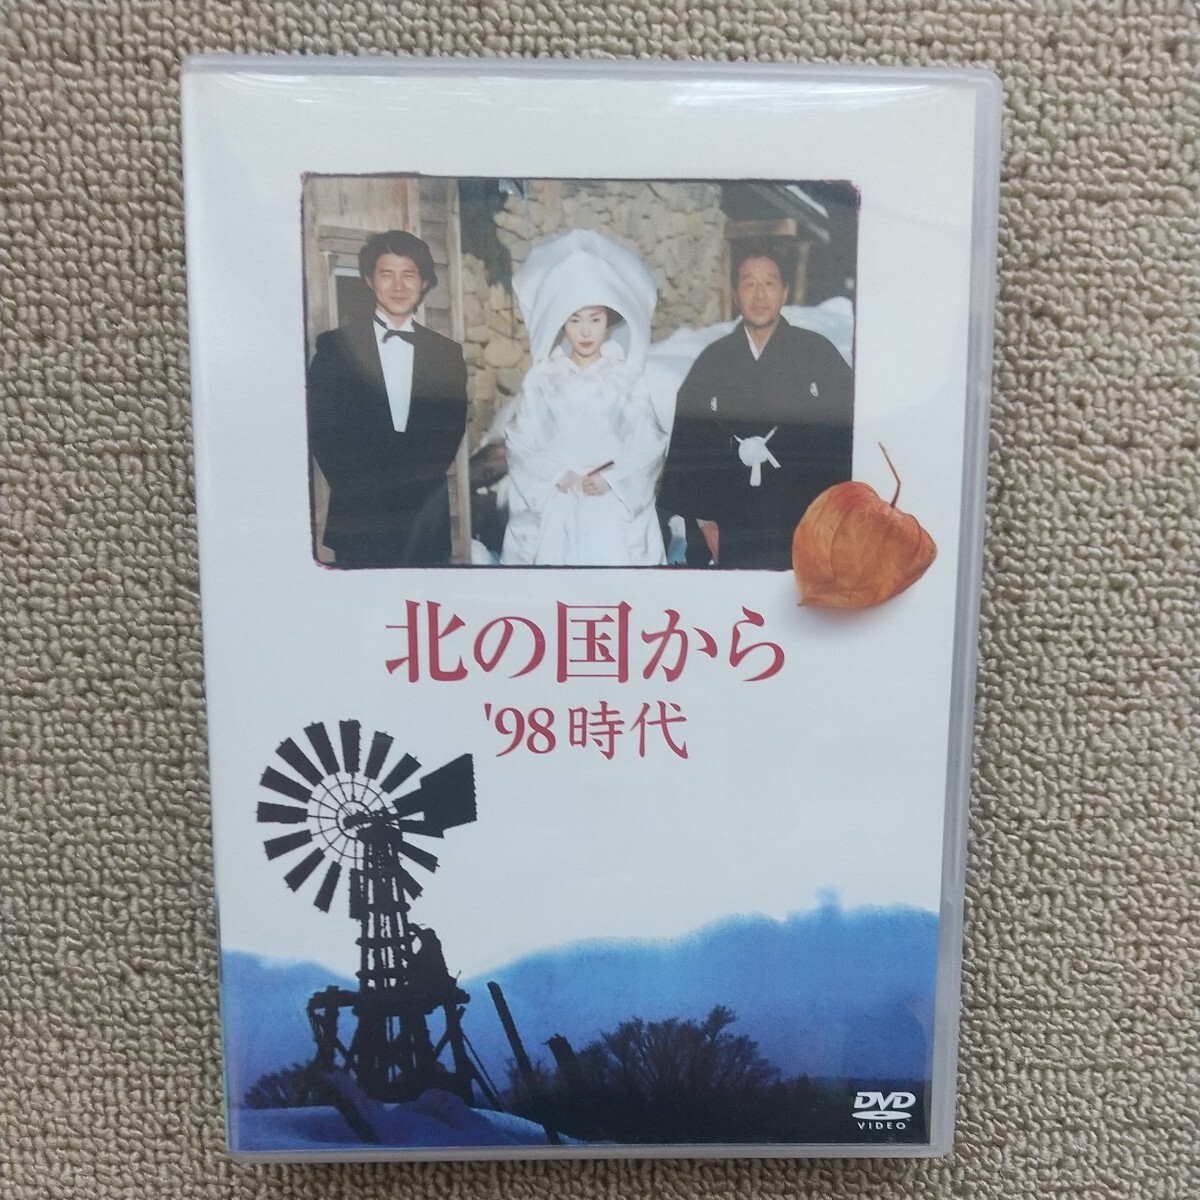 *DVD/ cell версия север. страна из \'98 времена 2 листов комплект рисовое поле средний ../ Yoshioka превосходящий ./ средний ...